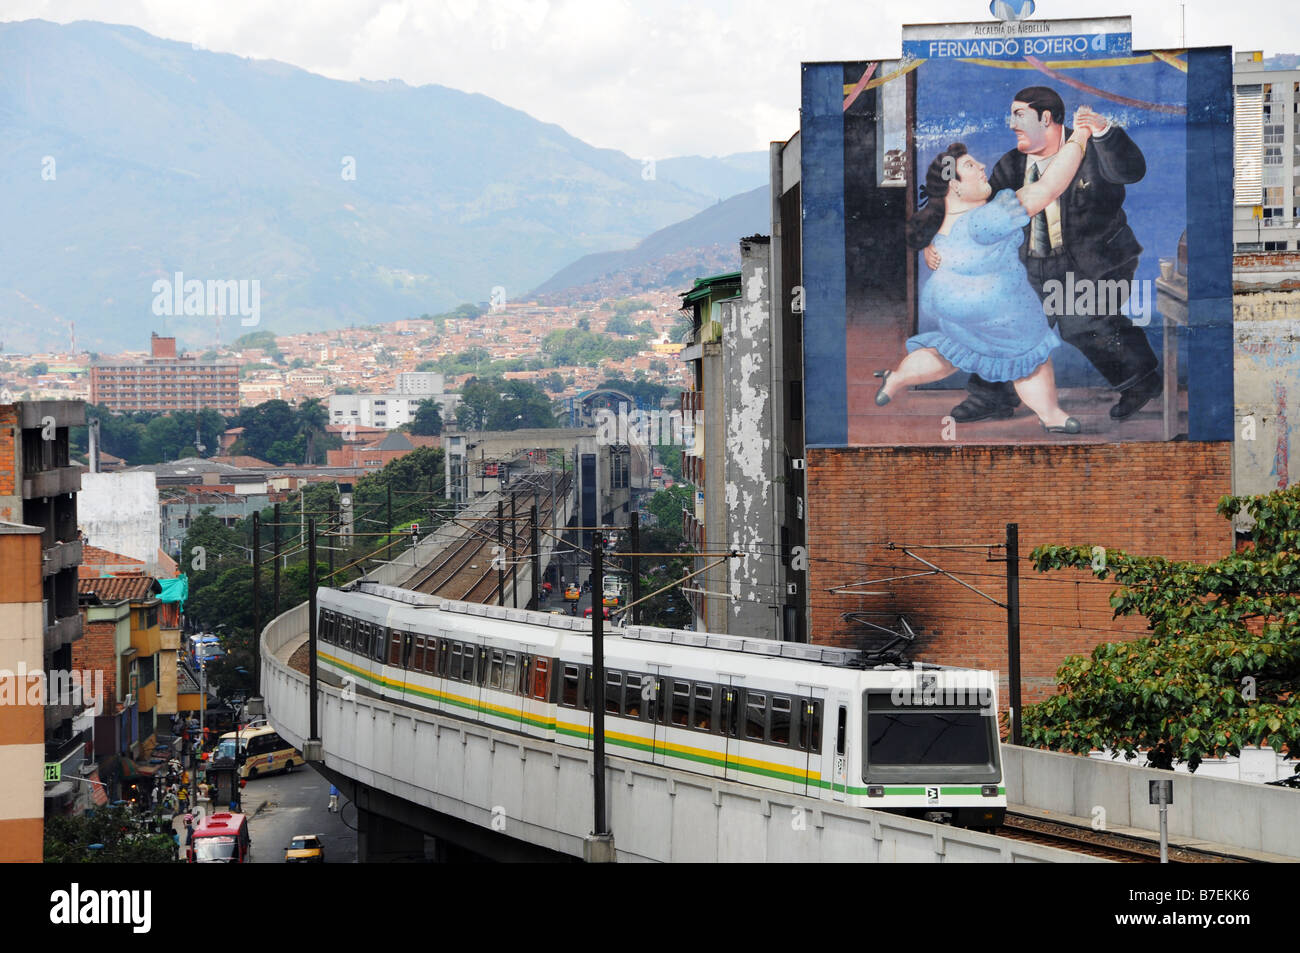 Une vue panoramique de Medellin, Colombie et le métro qui fonctionne dans la ville. Banque D'Images